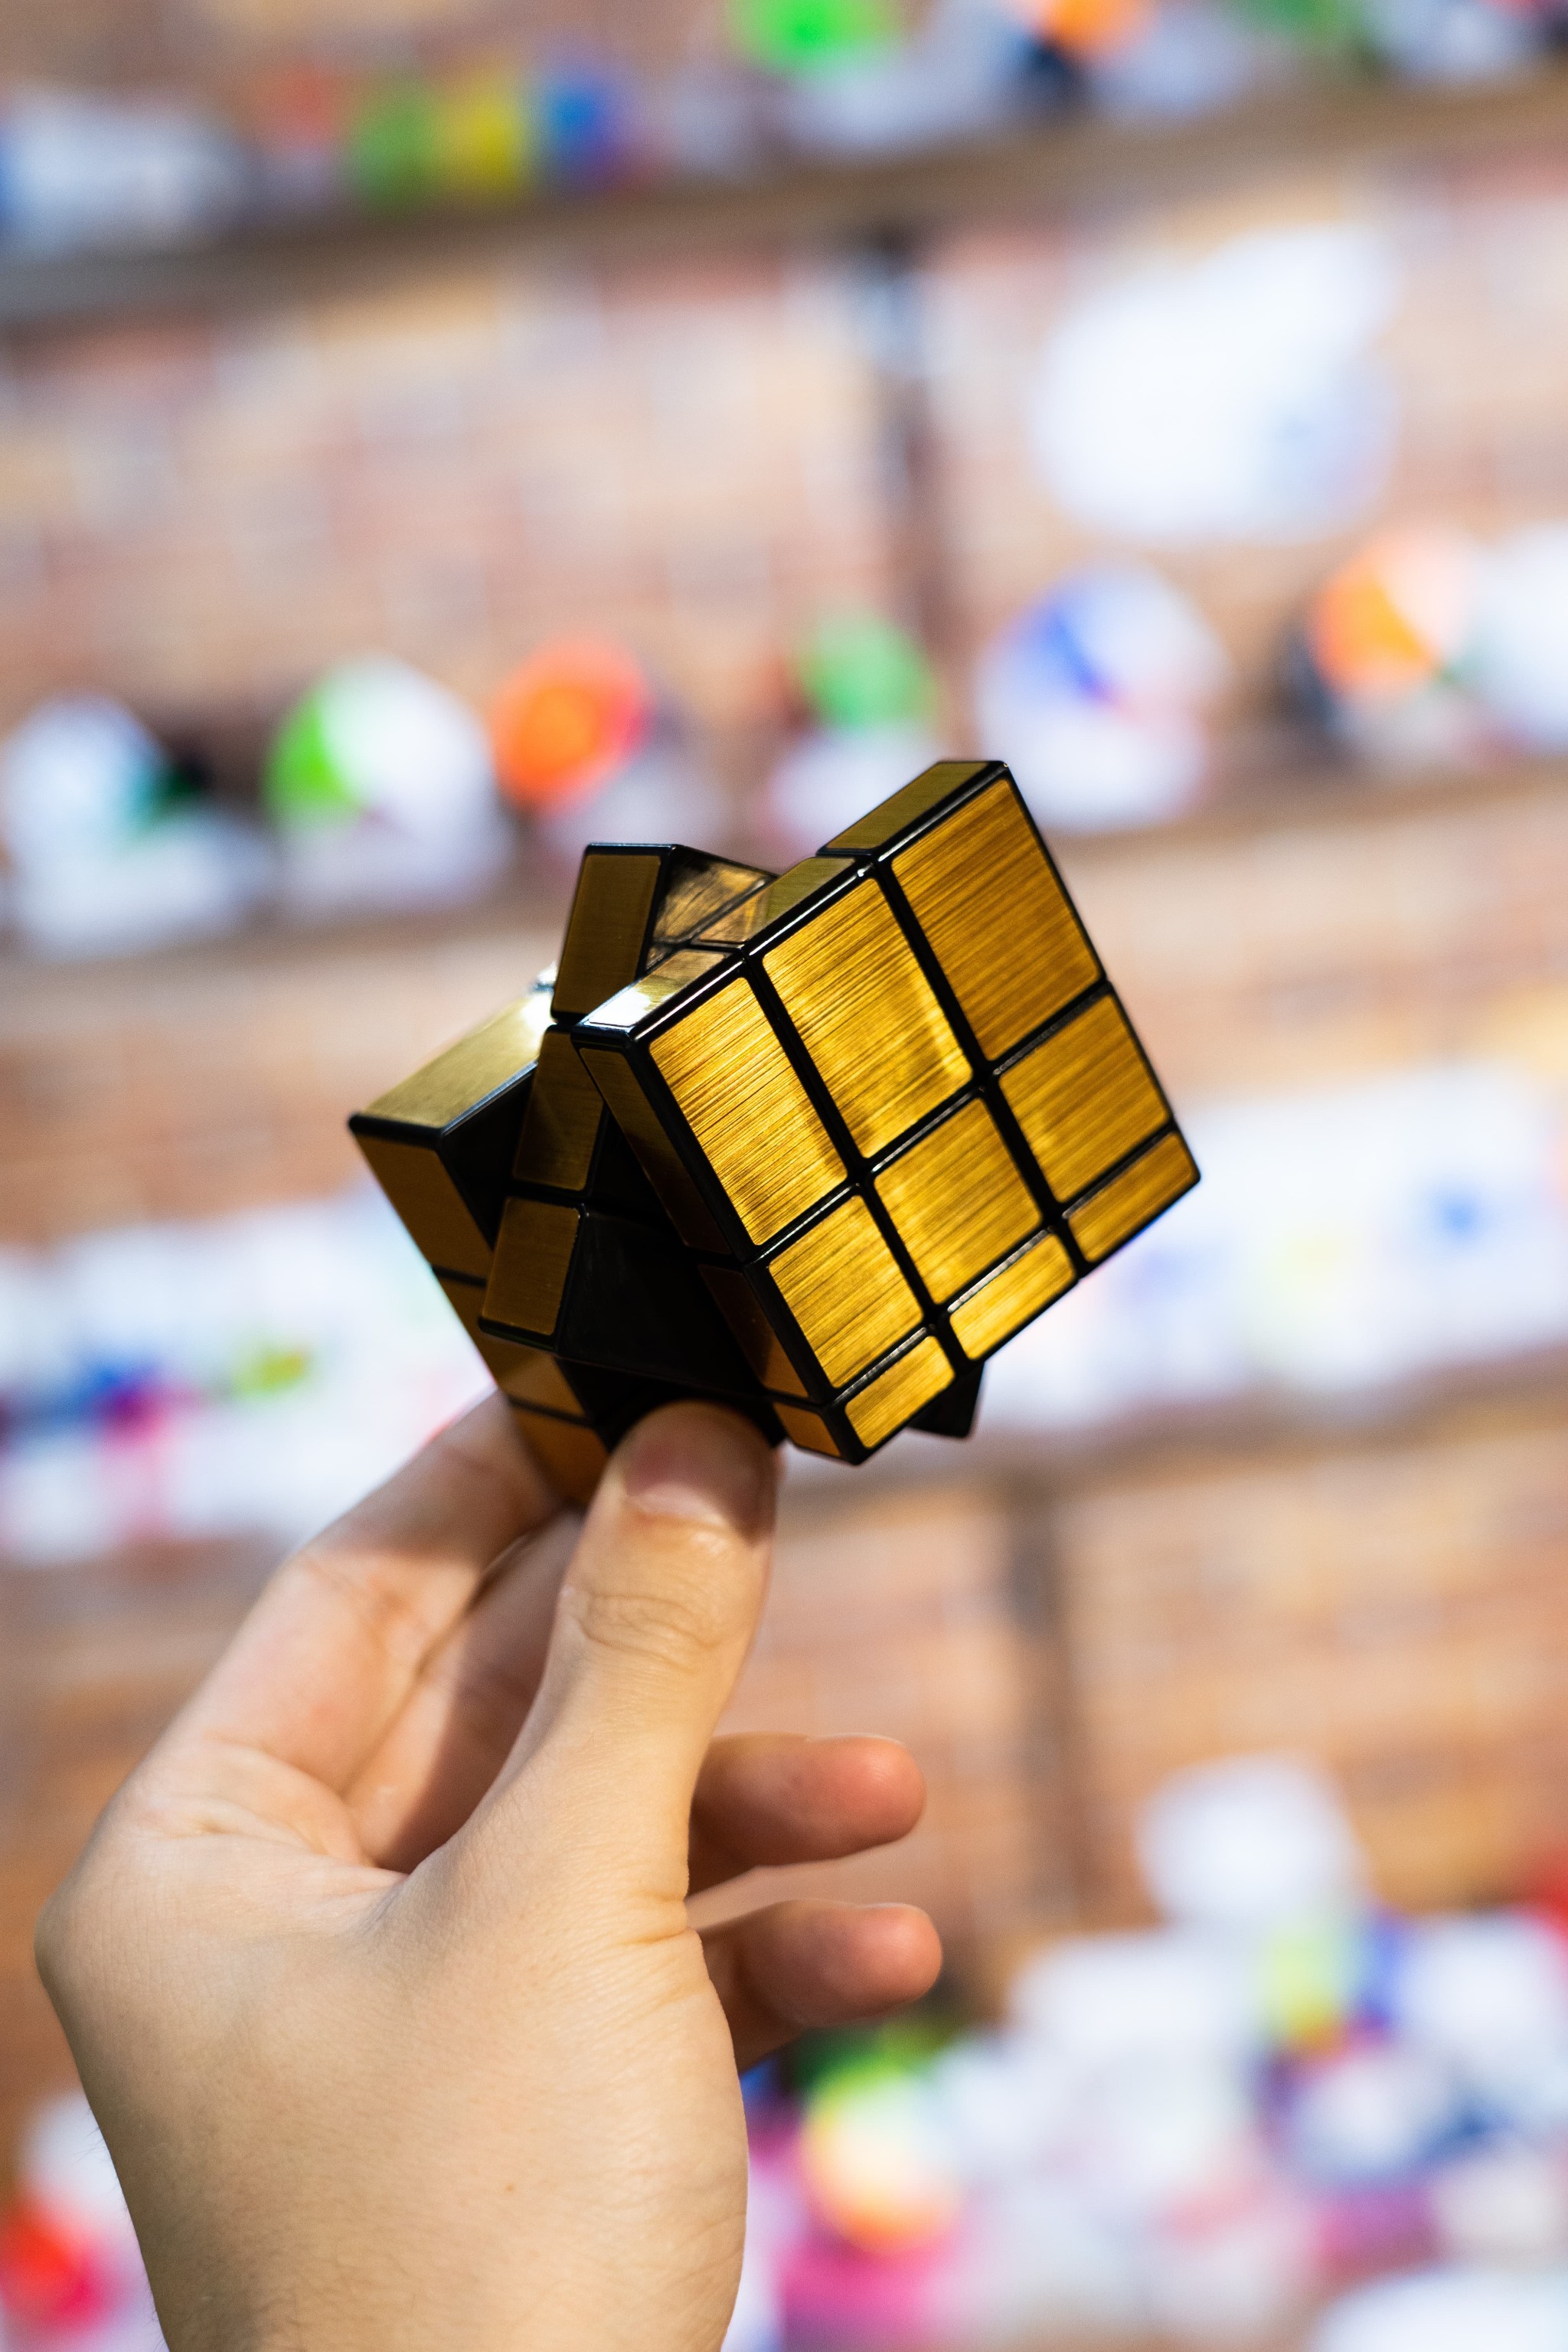 Логический зеркальный кубик Рубика головоломка «Золотой» 6 см. P168-11 / 3х3х3